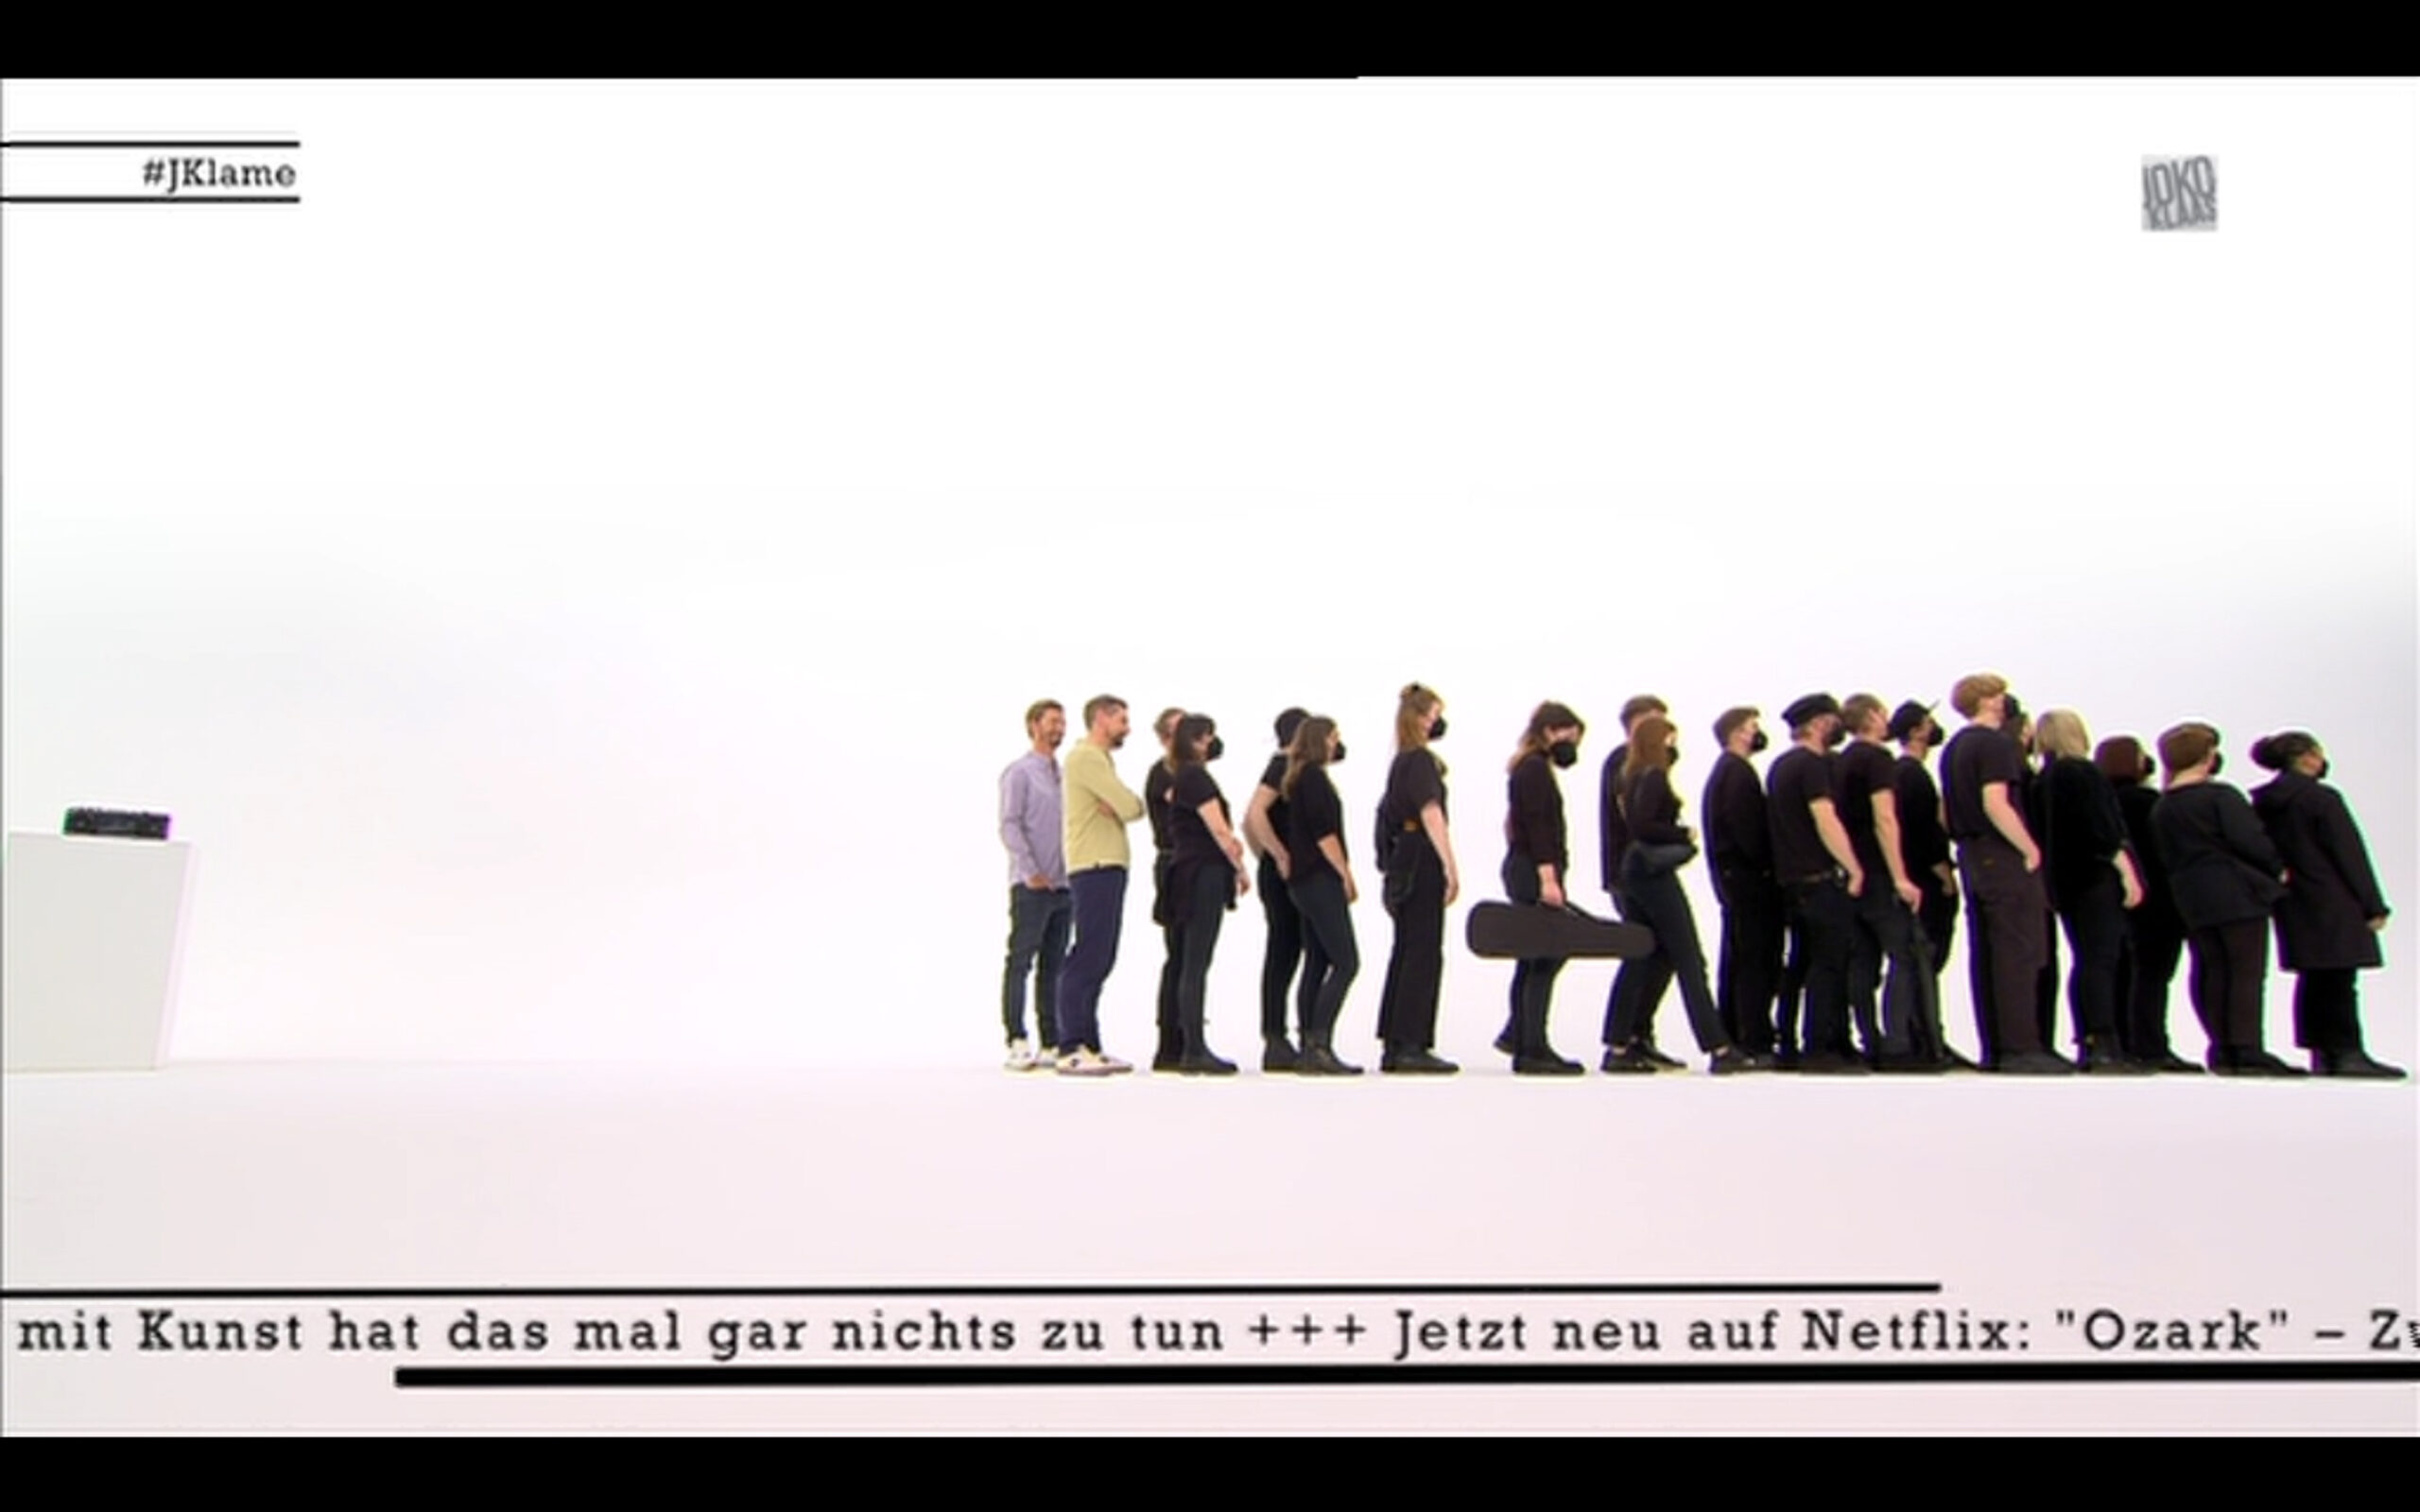 Screenshot der Sendung: Joko und Klaas stehen hinter vielen schwarz gekleideten Menschen